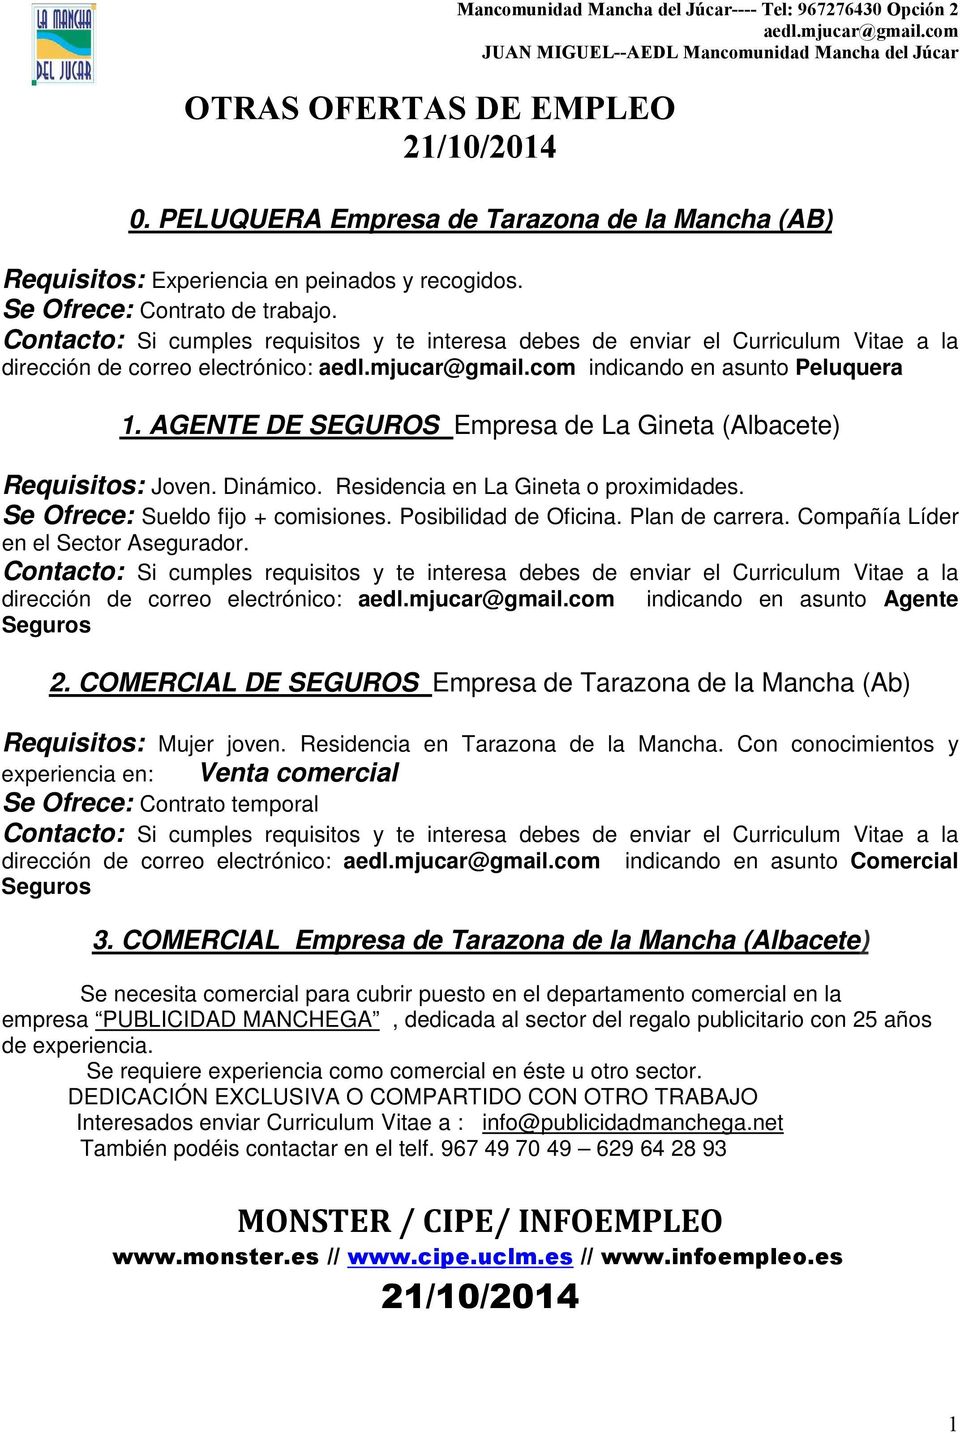 AGENTE DE SEGUROS Empresa de La Gineta (Albacete) Requisitos: Joven. Dinámico. Residencia en La Gineta o proximidades. Se Ofrece: Sueldo fijo + comisiones. Posibilidad de Oficina. Plan de carrera.